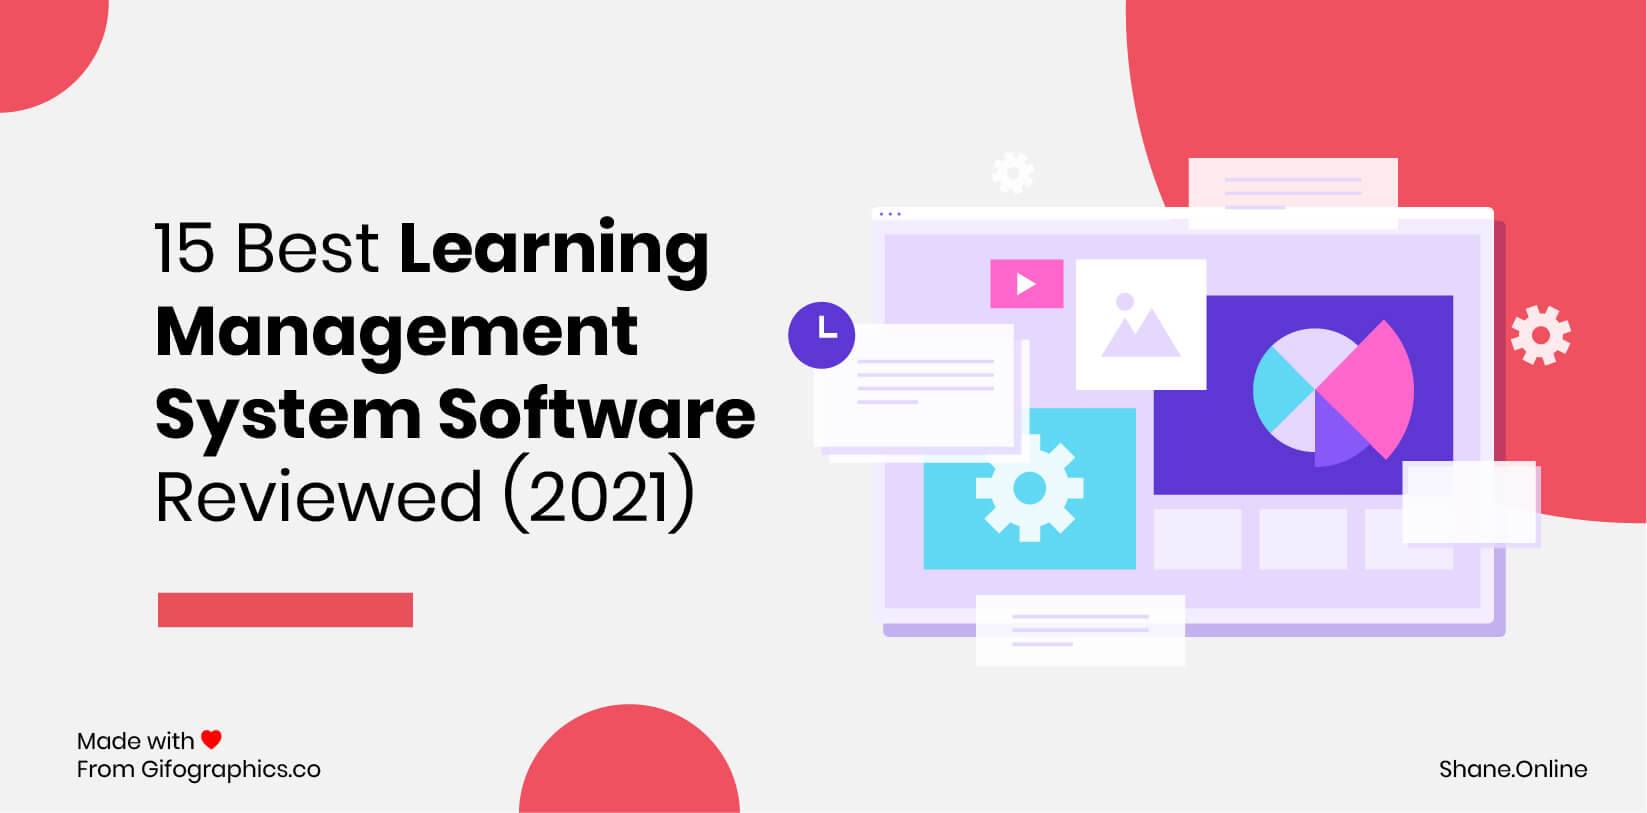 15 miglior software di sistema di gestione dell'apprendimento recensito (2021)